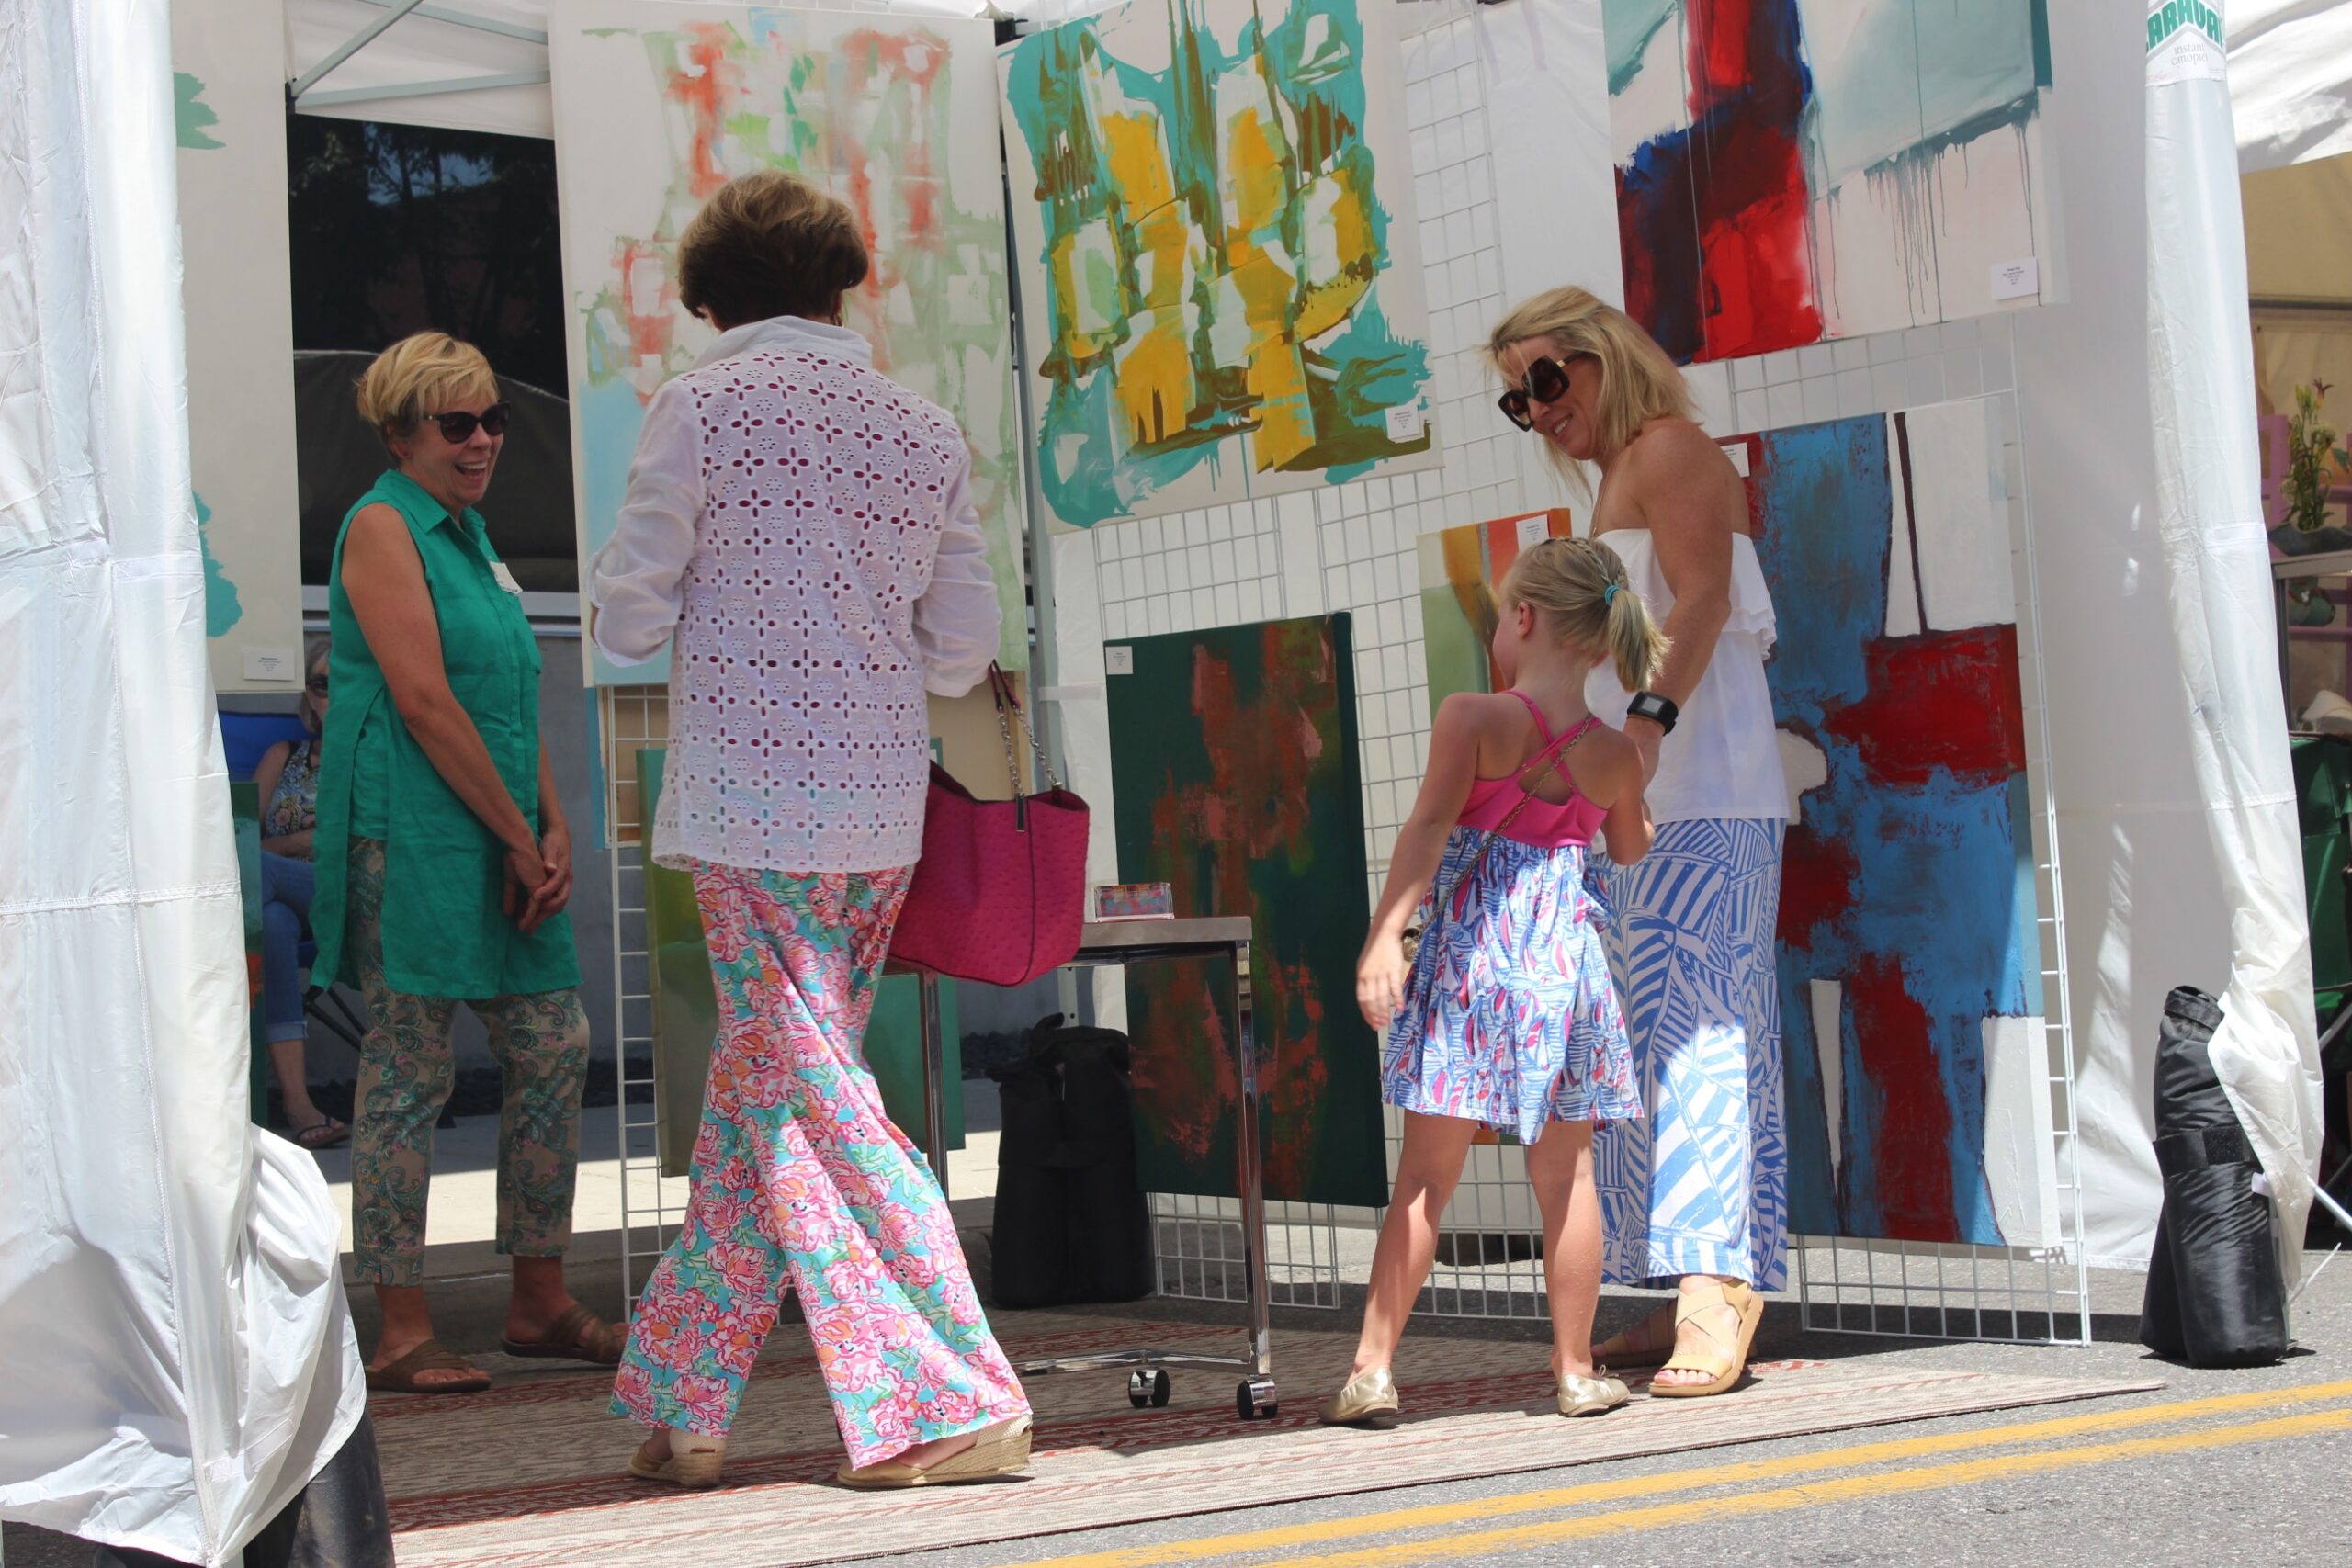 65th Annual Sidewalk Art Show – Saturday